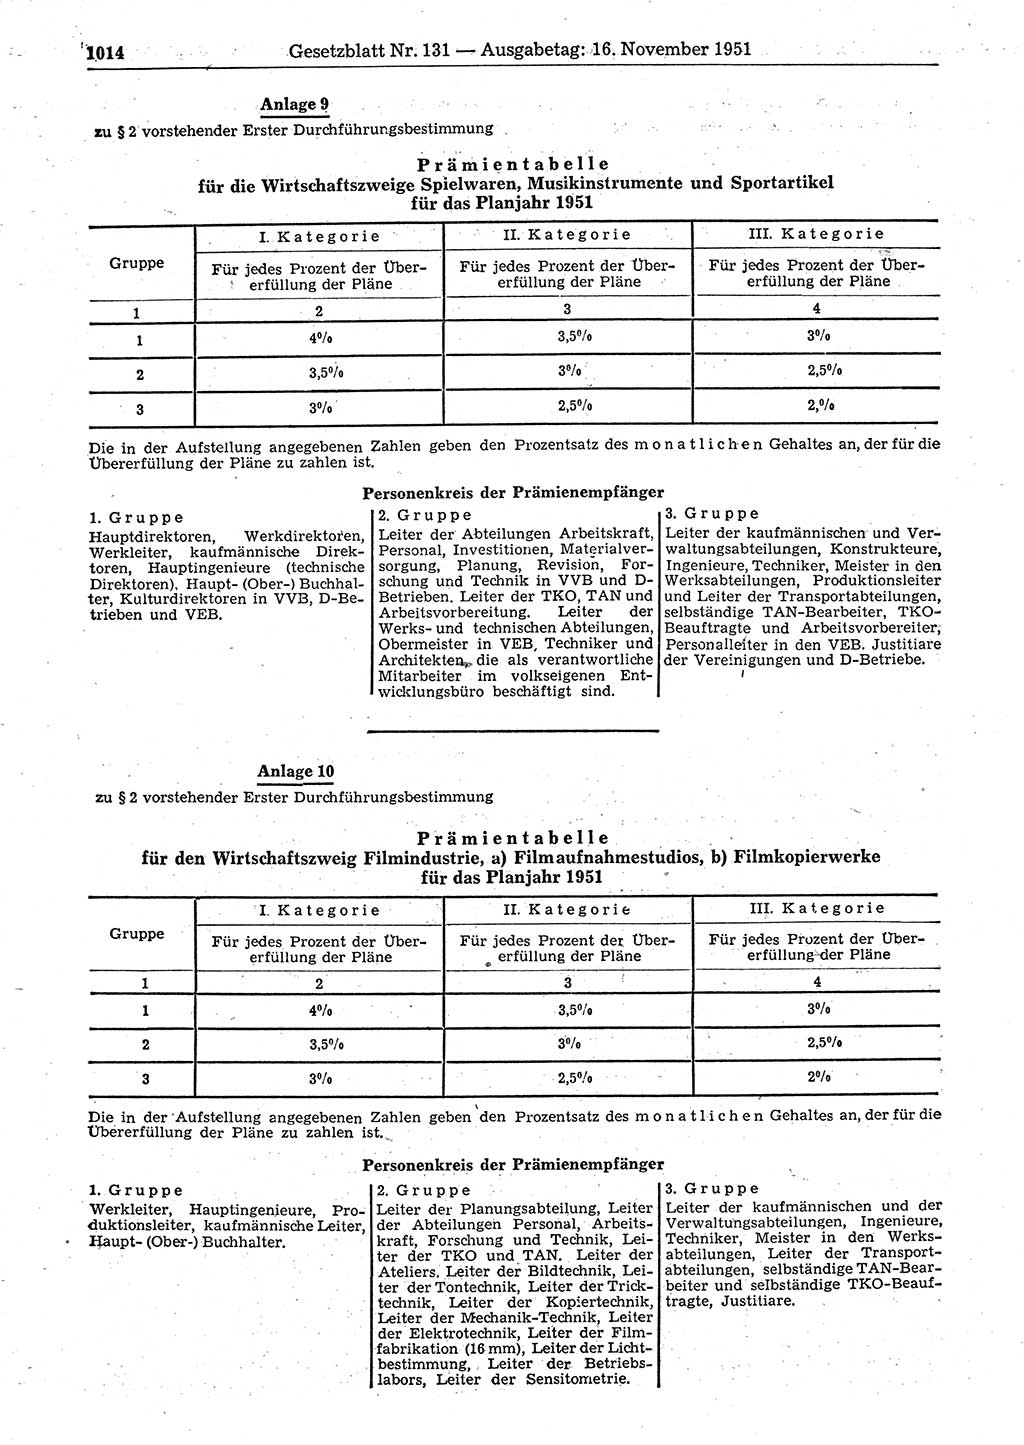 Gesetzblatt (GBl.) der Deutschen Demokratischen Republik (DDR) 1951, Seite 1014 (GBl. DDR 1951, S. 1014)